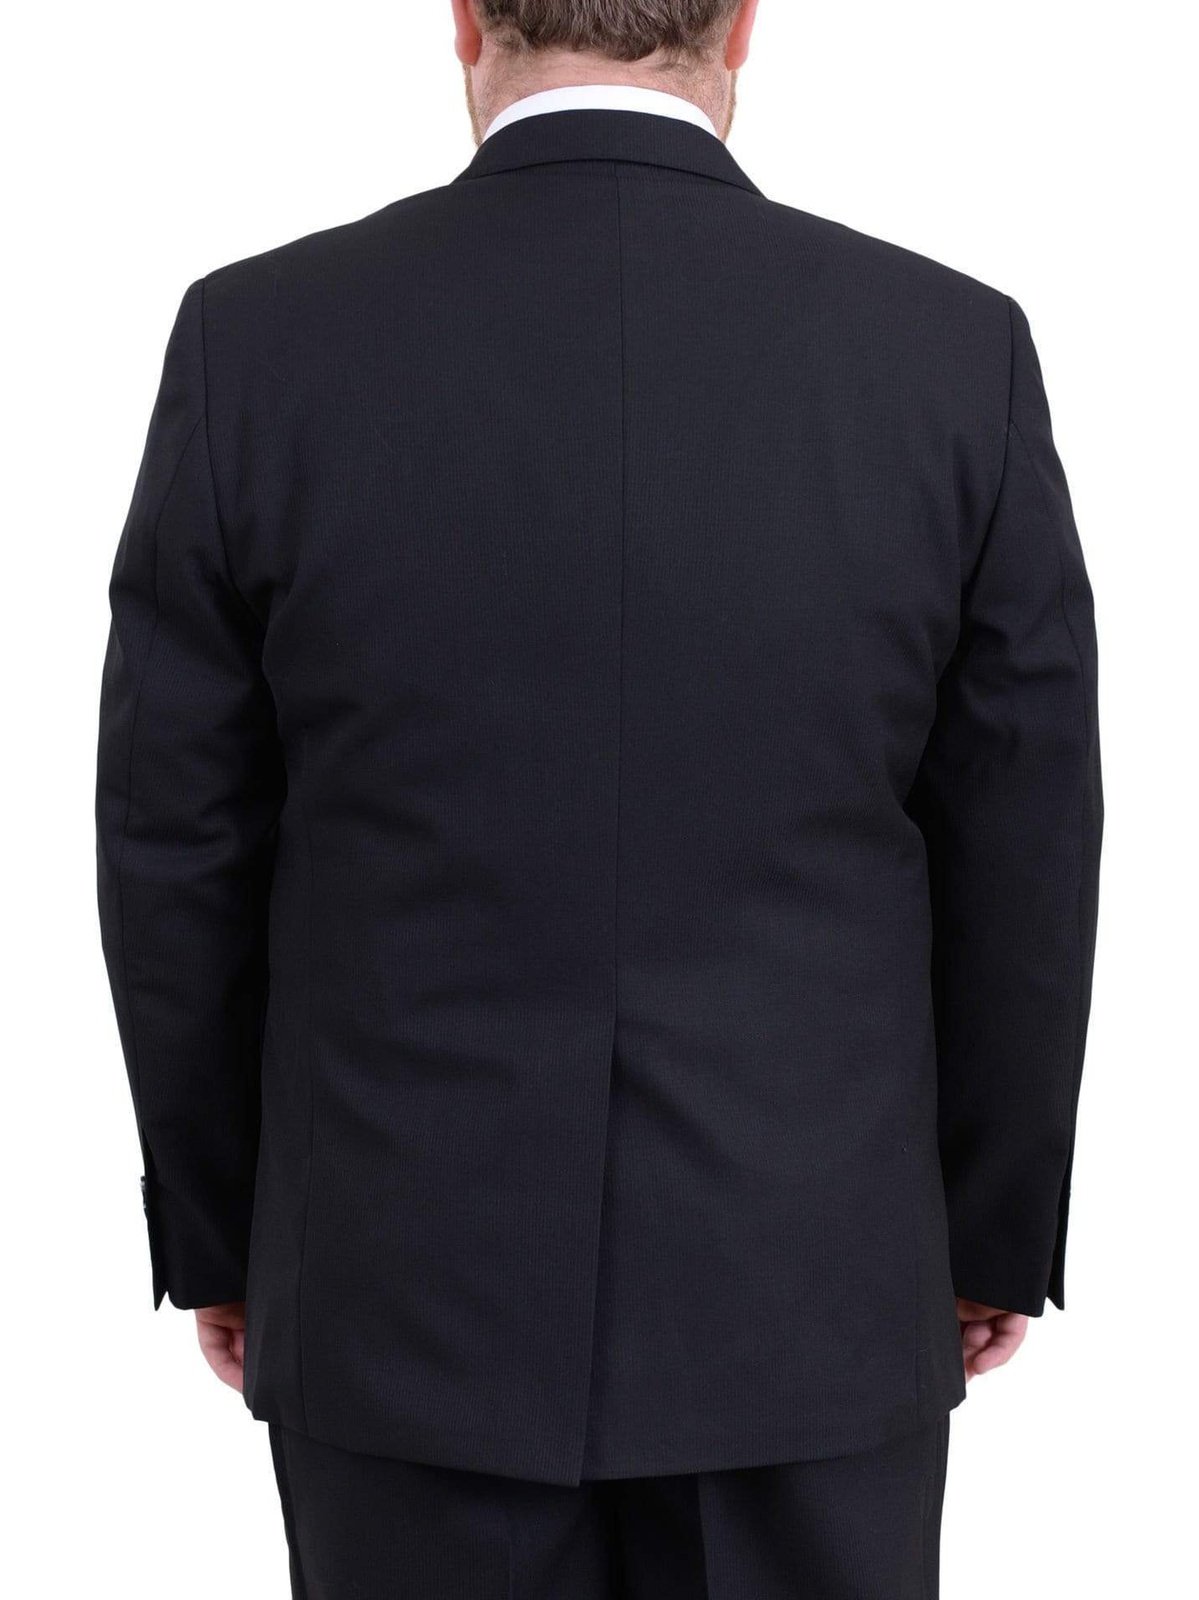 Arthur Black TWO PIECE SUITS Men&#39;s Arthur Black Executive Portly Fit Black Striped 2 Button 2 Piece Wool Suit